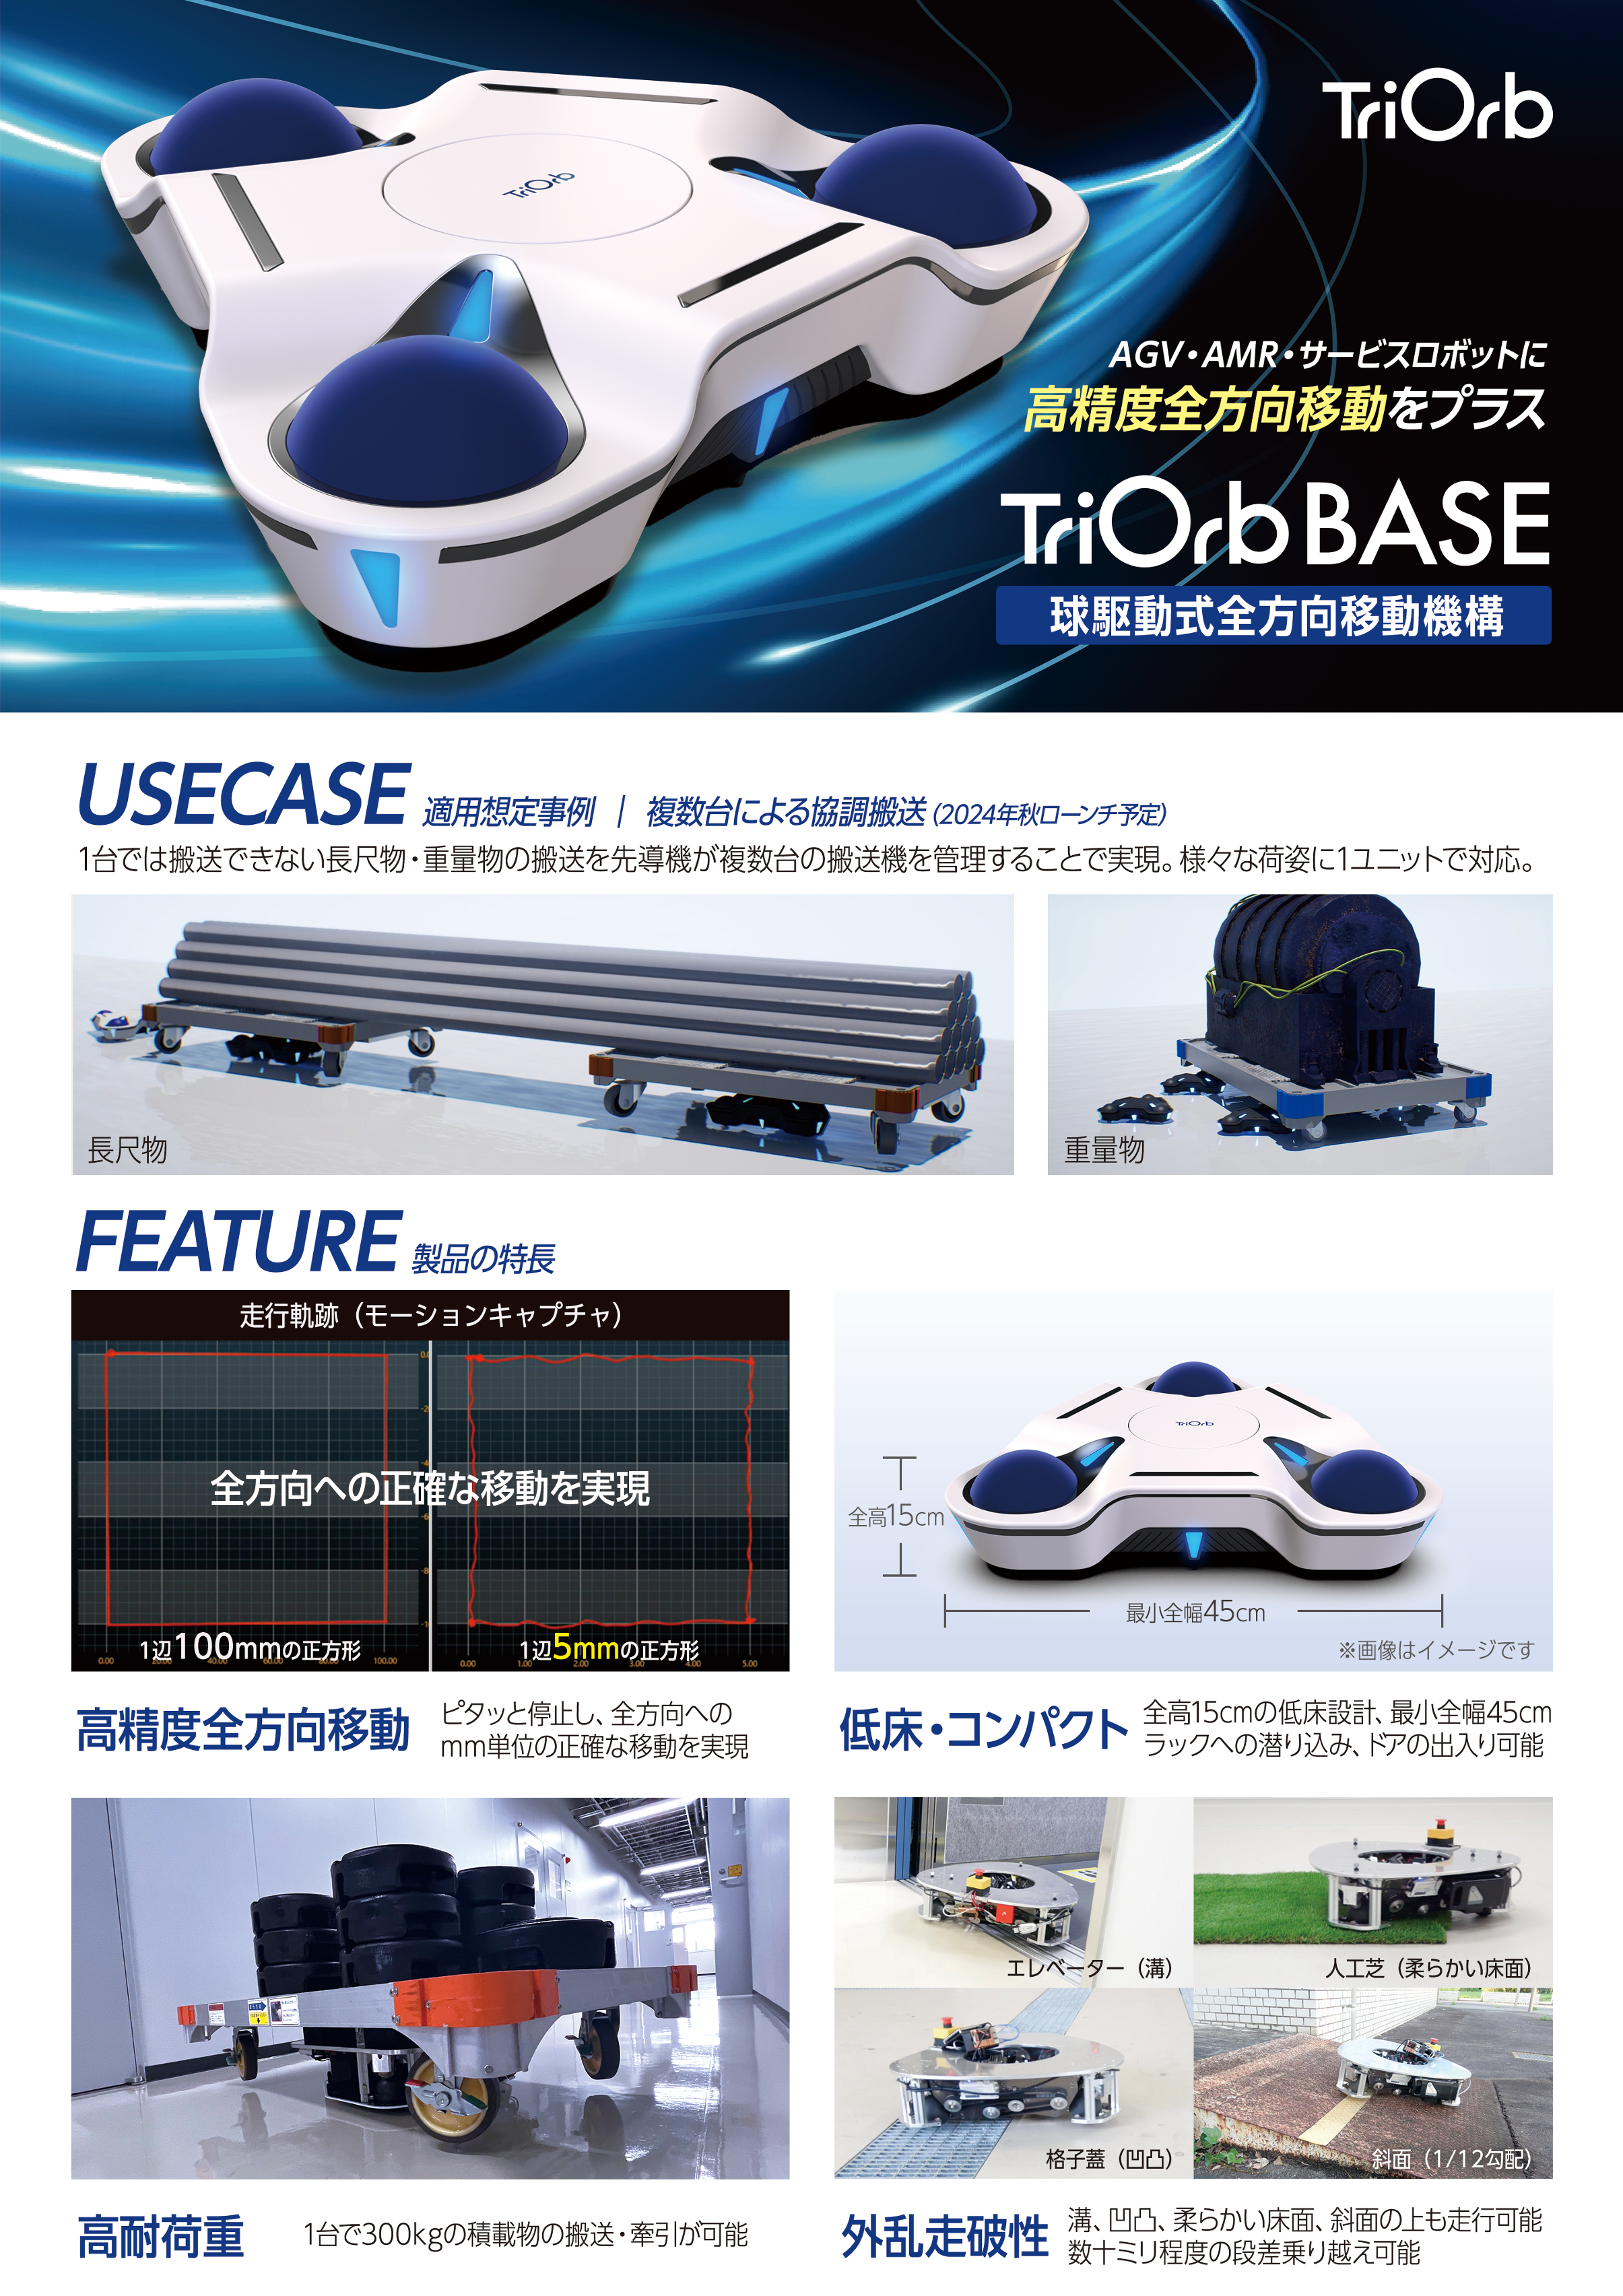 球駆動式全方向移動機構 TriOrb BASE（株式会社TriOrb）のカタログ無料